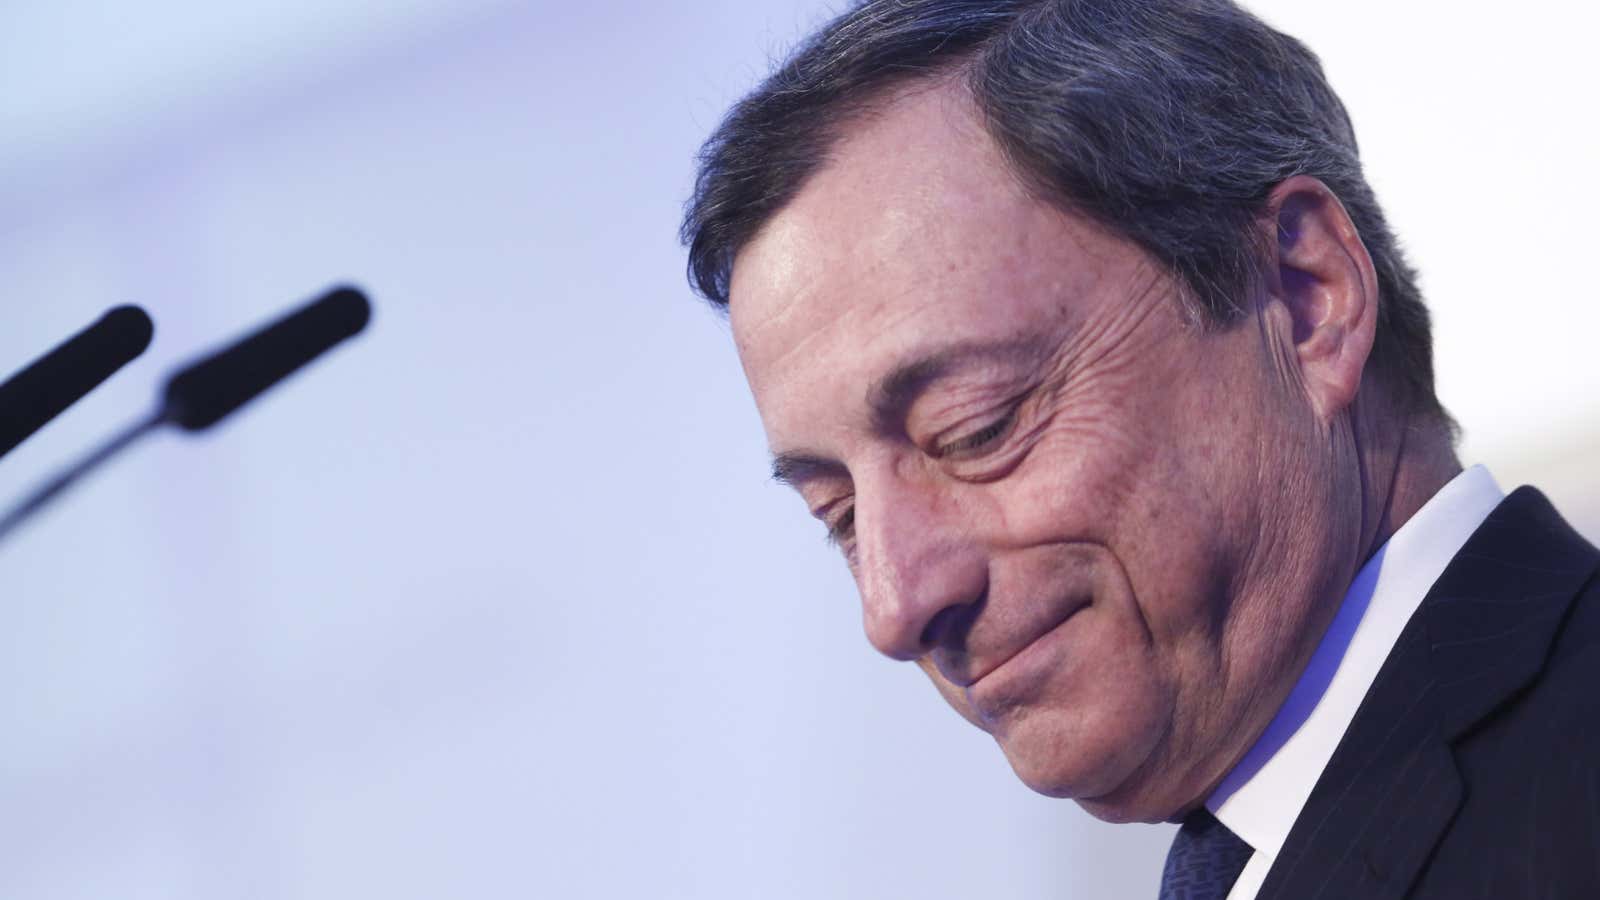 Draghi keeps his head down.